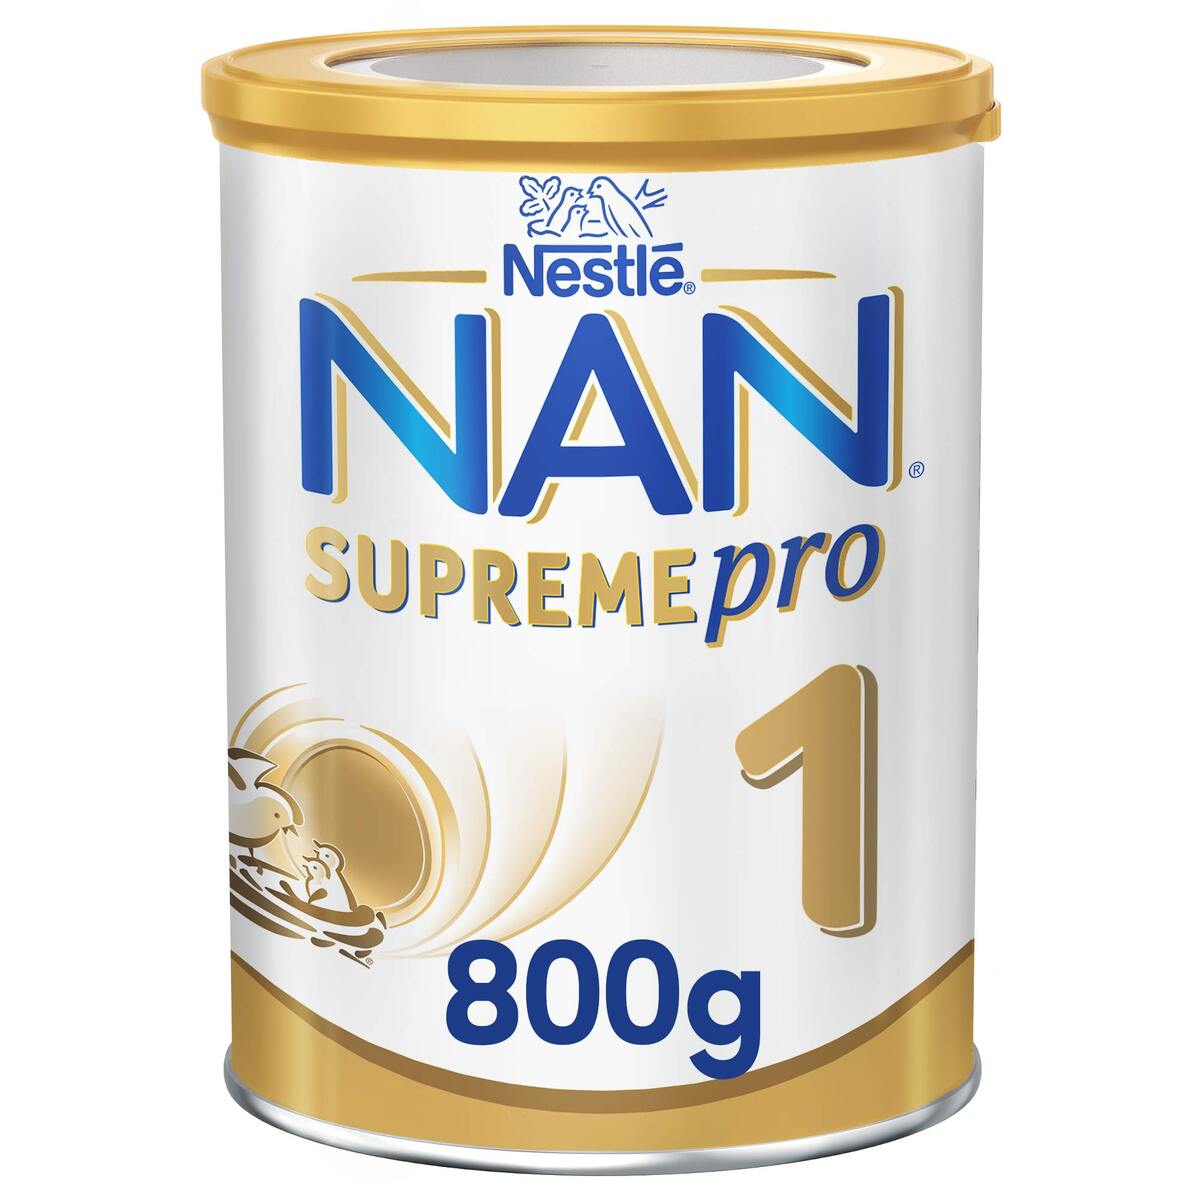 Buy Nestle NAN Optipro 1 Starter Infant Formula Up To 6 Months